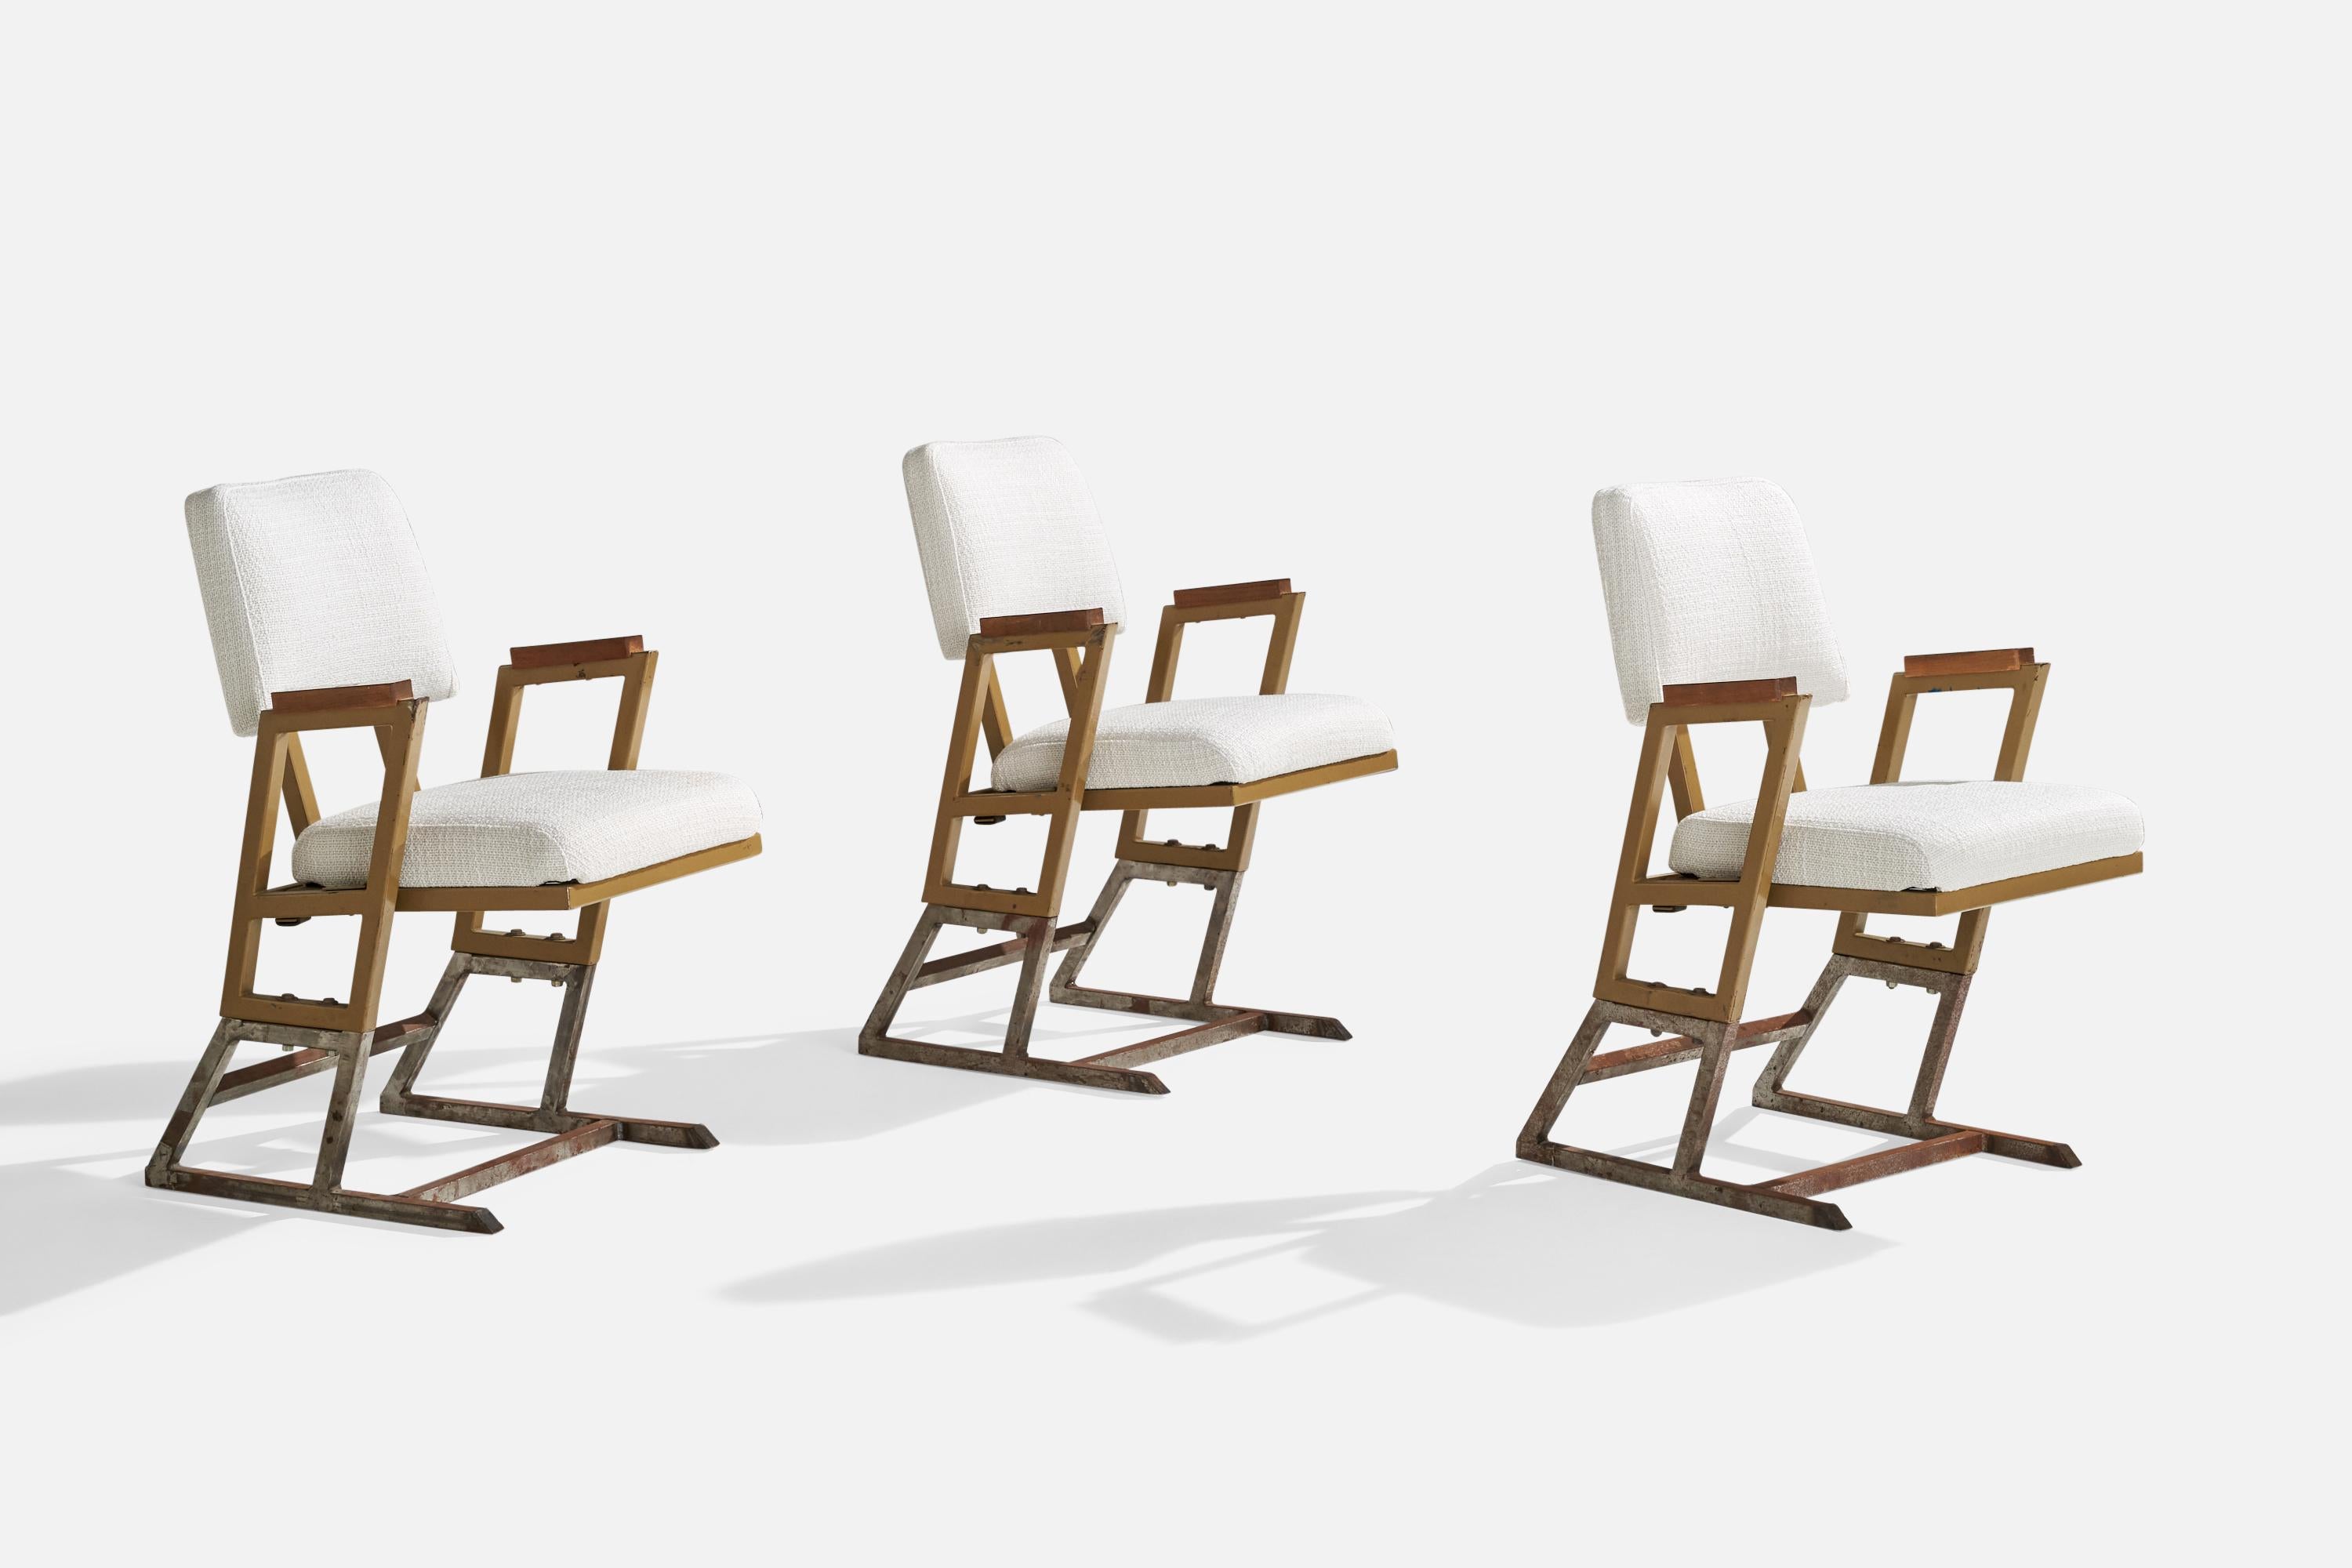 3 Sessel oder Beistellstühle aus lackiertem Metall, Holz und weißem Stoff, entworfen und hergestellt von Frank Lloyd Wright für das Kalita Humphreys Theater, um 1955.

Provenienz: Kalita Humphreys Theater, Dallas, Texas, 1955. Das Gebäude wurde 1959